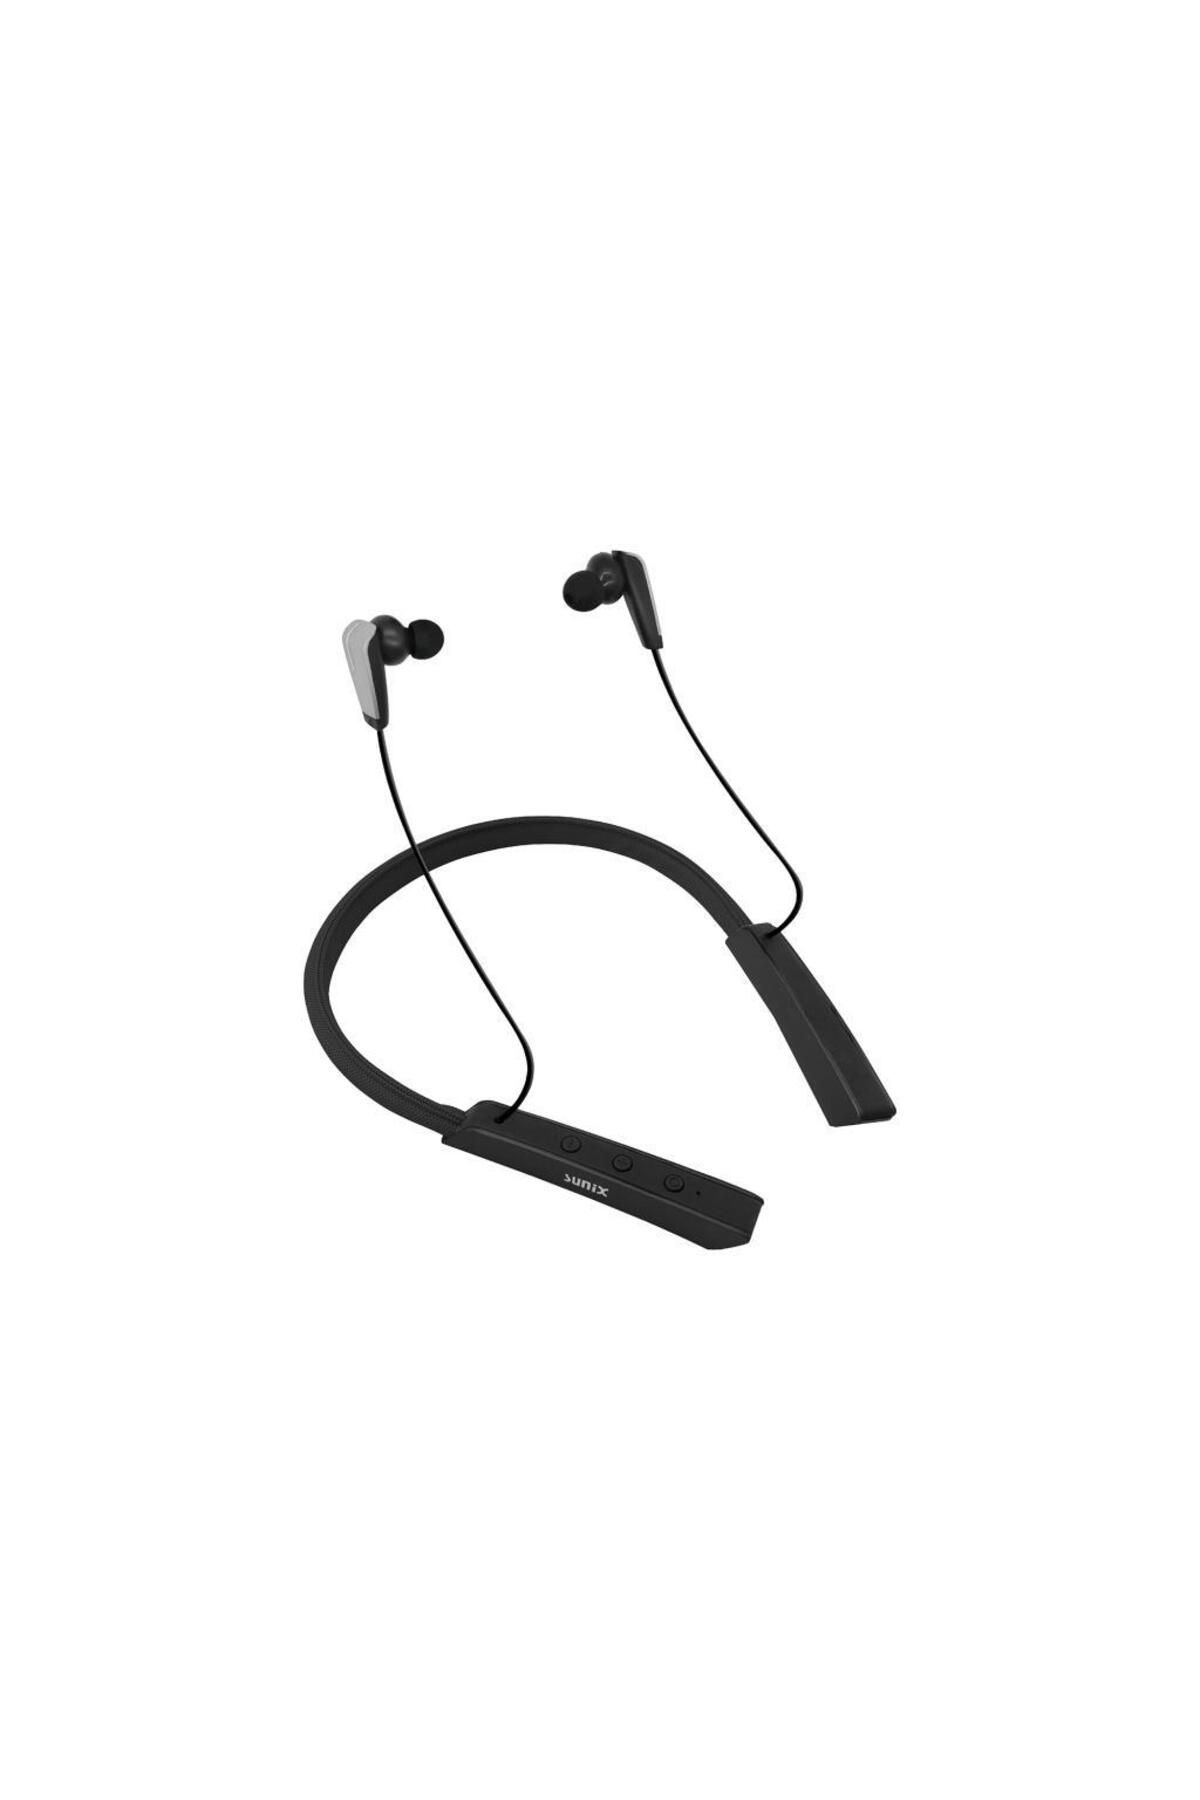 Sunix Bluetooth 5.0 45 Saat Kullanım Süreli Boyun Askılı Bluetooth Kulaklık Siyah Blt-35